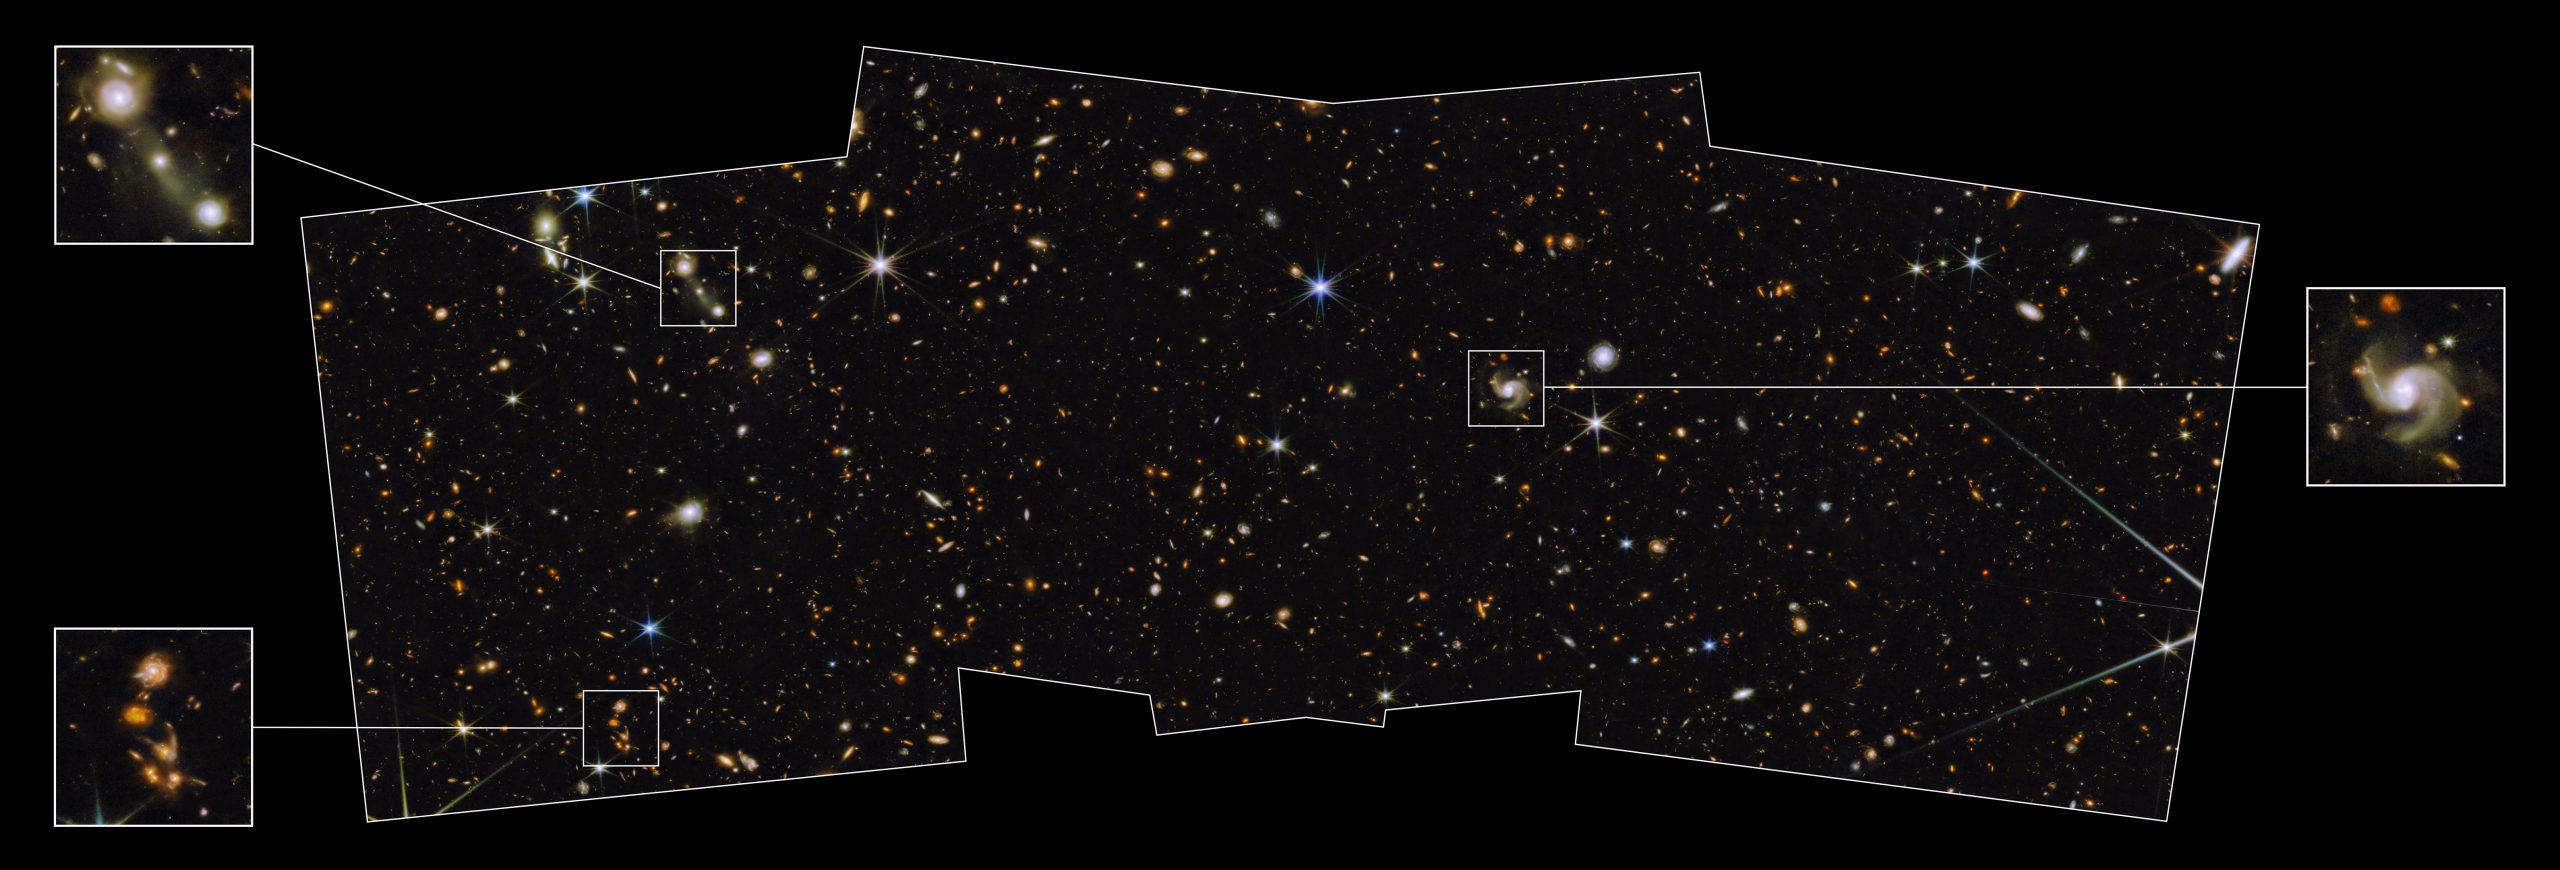 韦伯太空望远镜捕捉到北黄道极 专家详解镶嵌在银河系的“钻石”